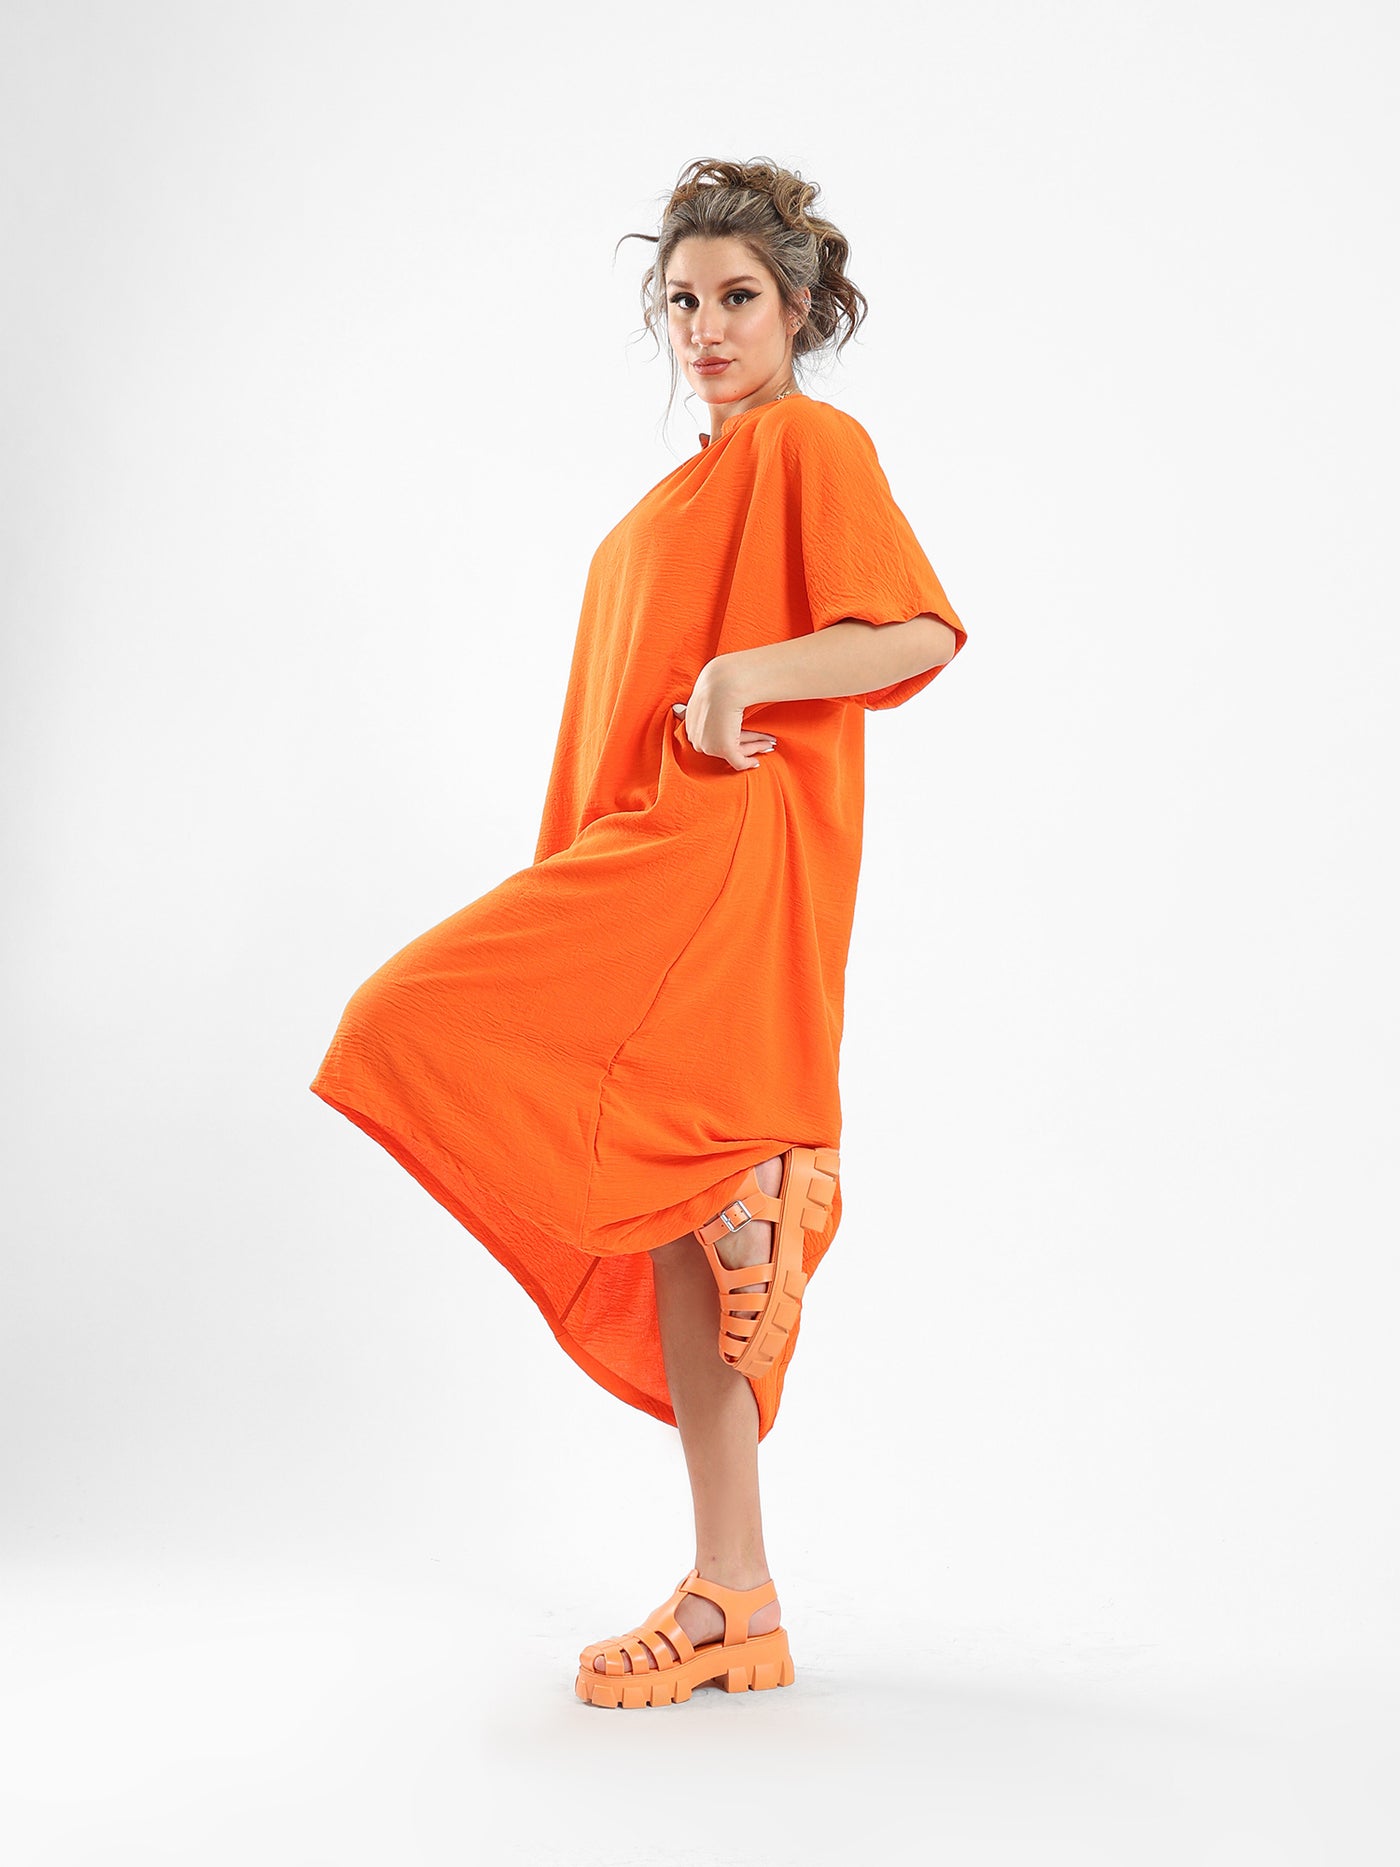 فستان - تصميم هرمي - نصف كم